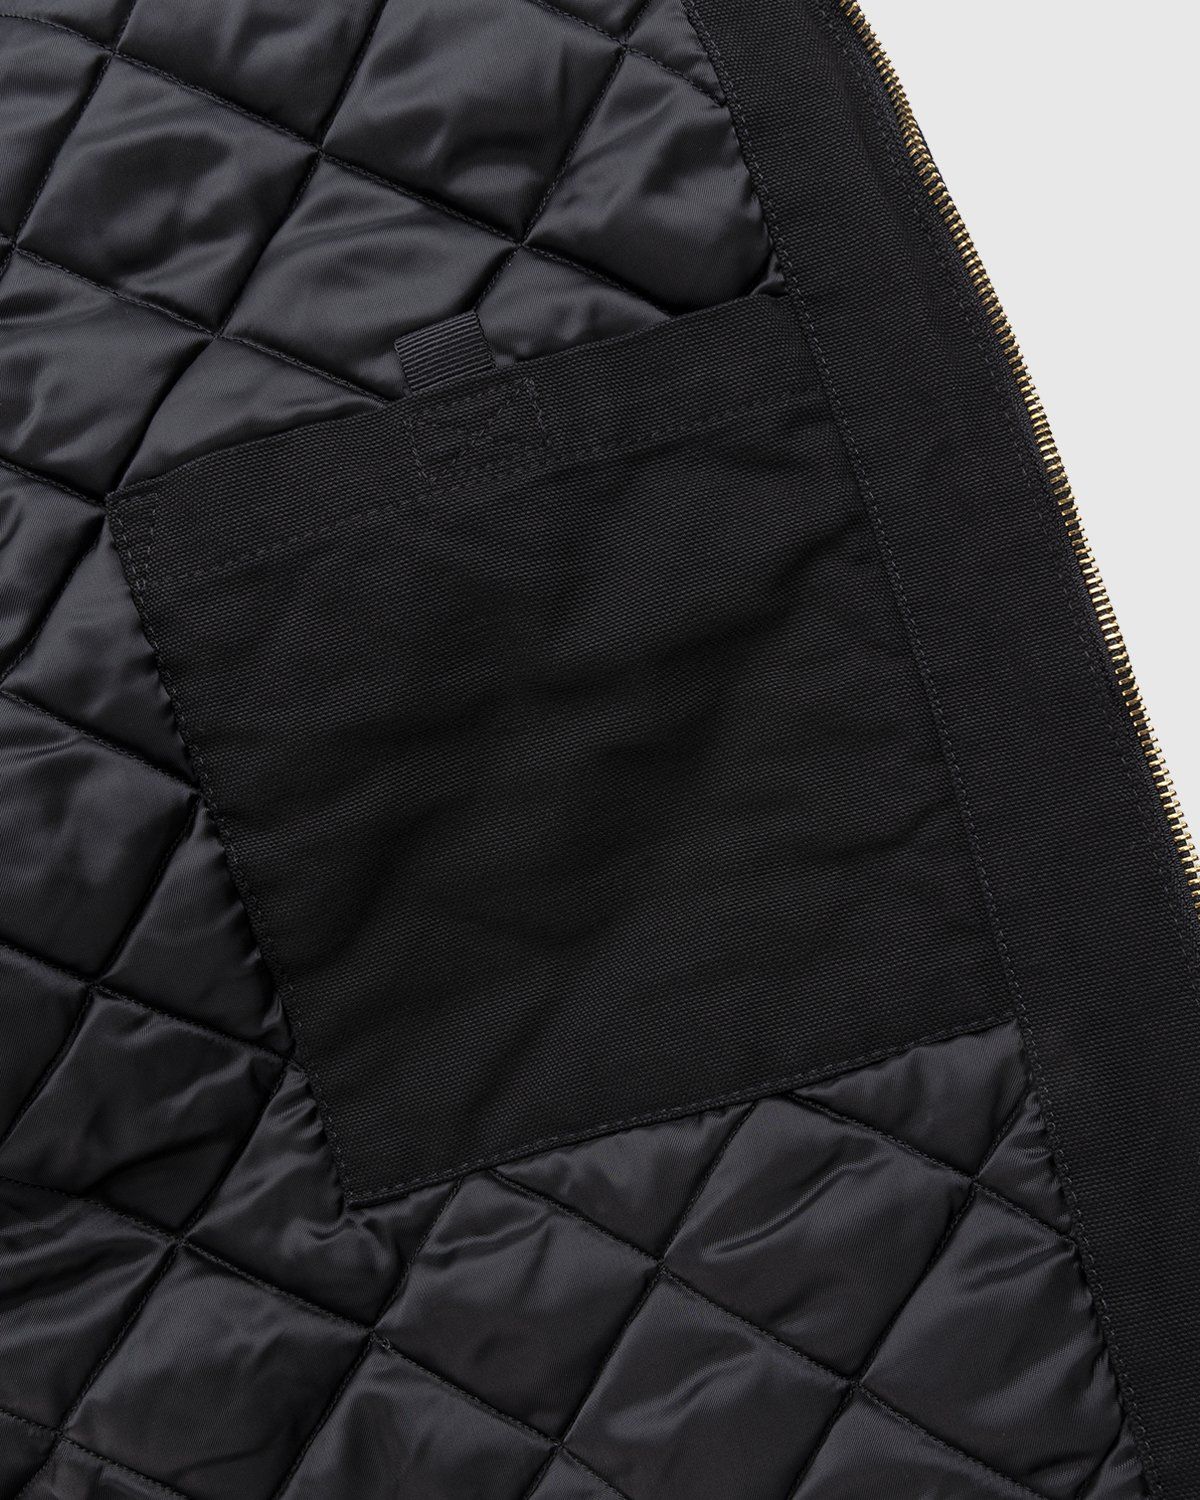 Carhartt WIP – OG Detroit Jacket Black - Outerwear - Black - Image 6